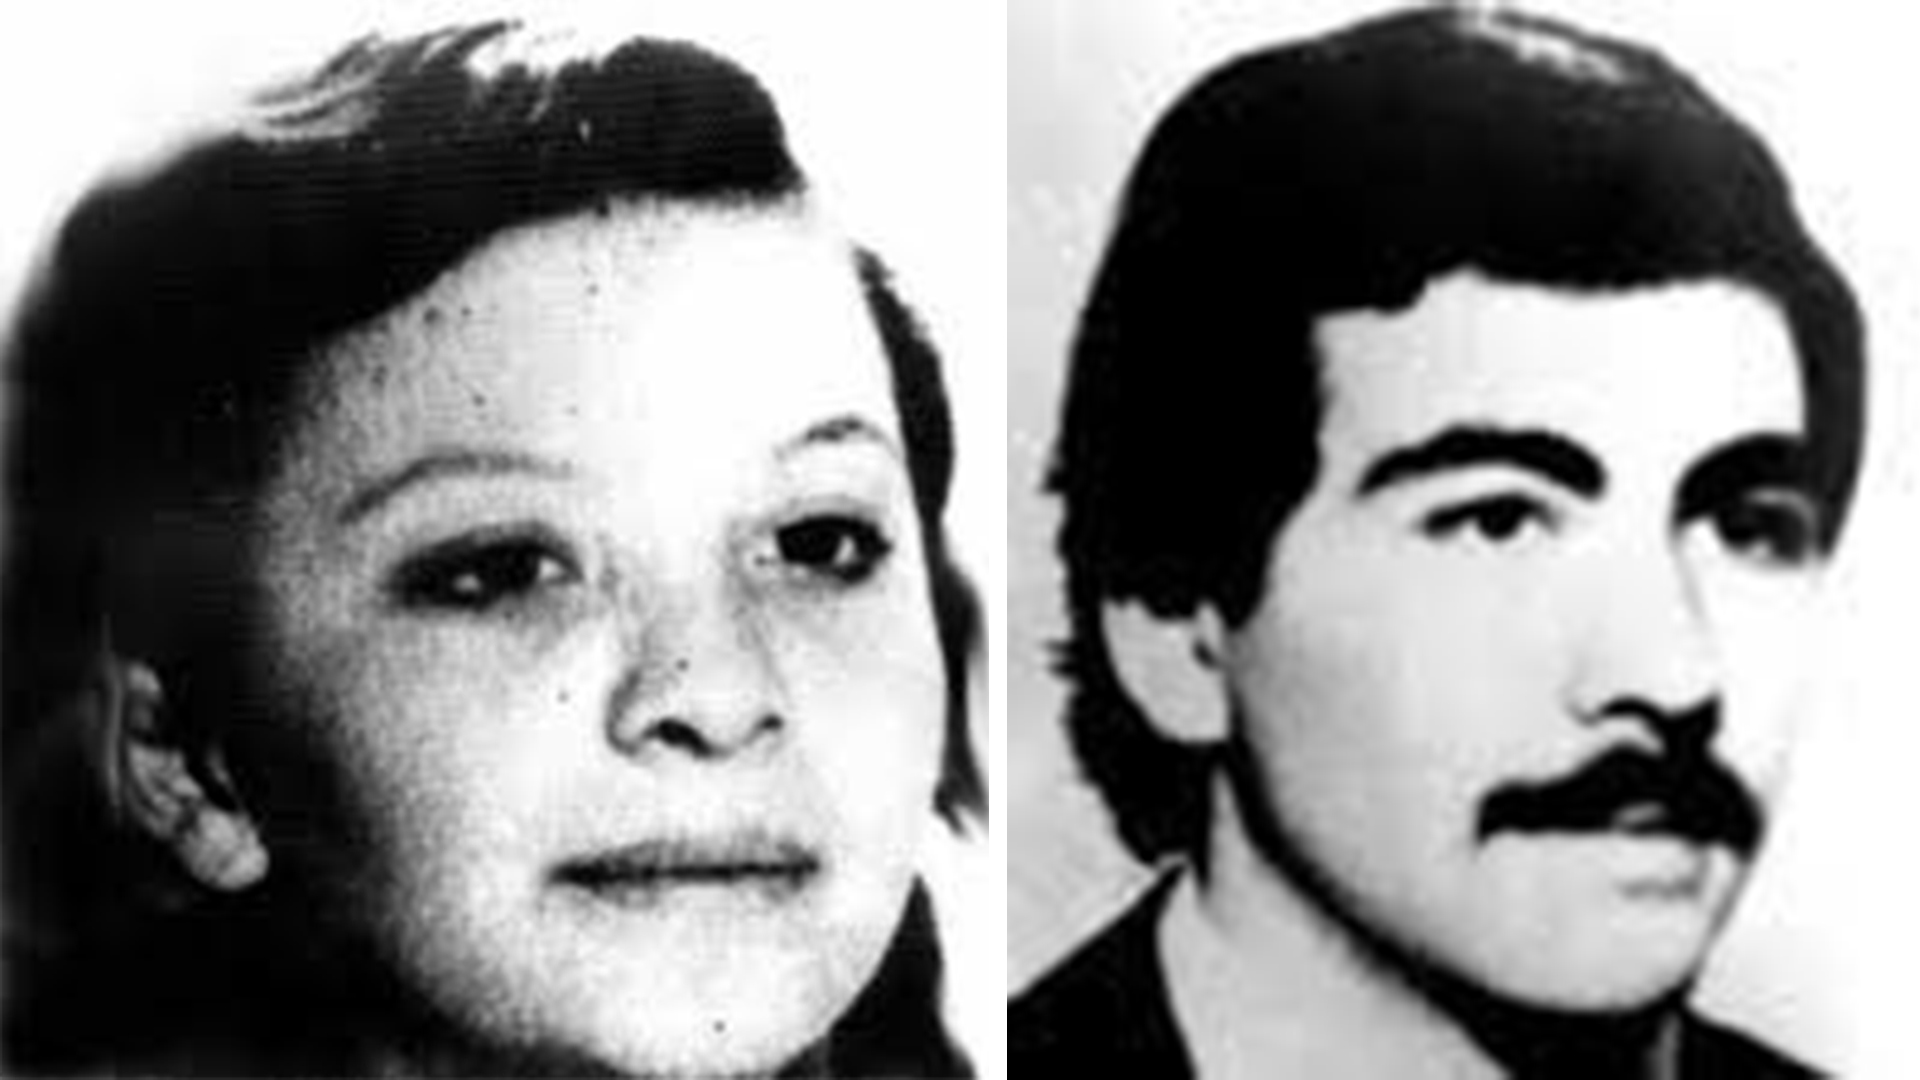 Inés Ortega y Leonardo Fossati, ella tenía 16 años y él 22 cuando fueron secuestrados. La joven estaba embarazada y tuvo a su bebé en el centro clandestino de detención que funcionaba en la Comisaria Quinta de La Plata